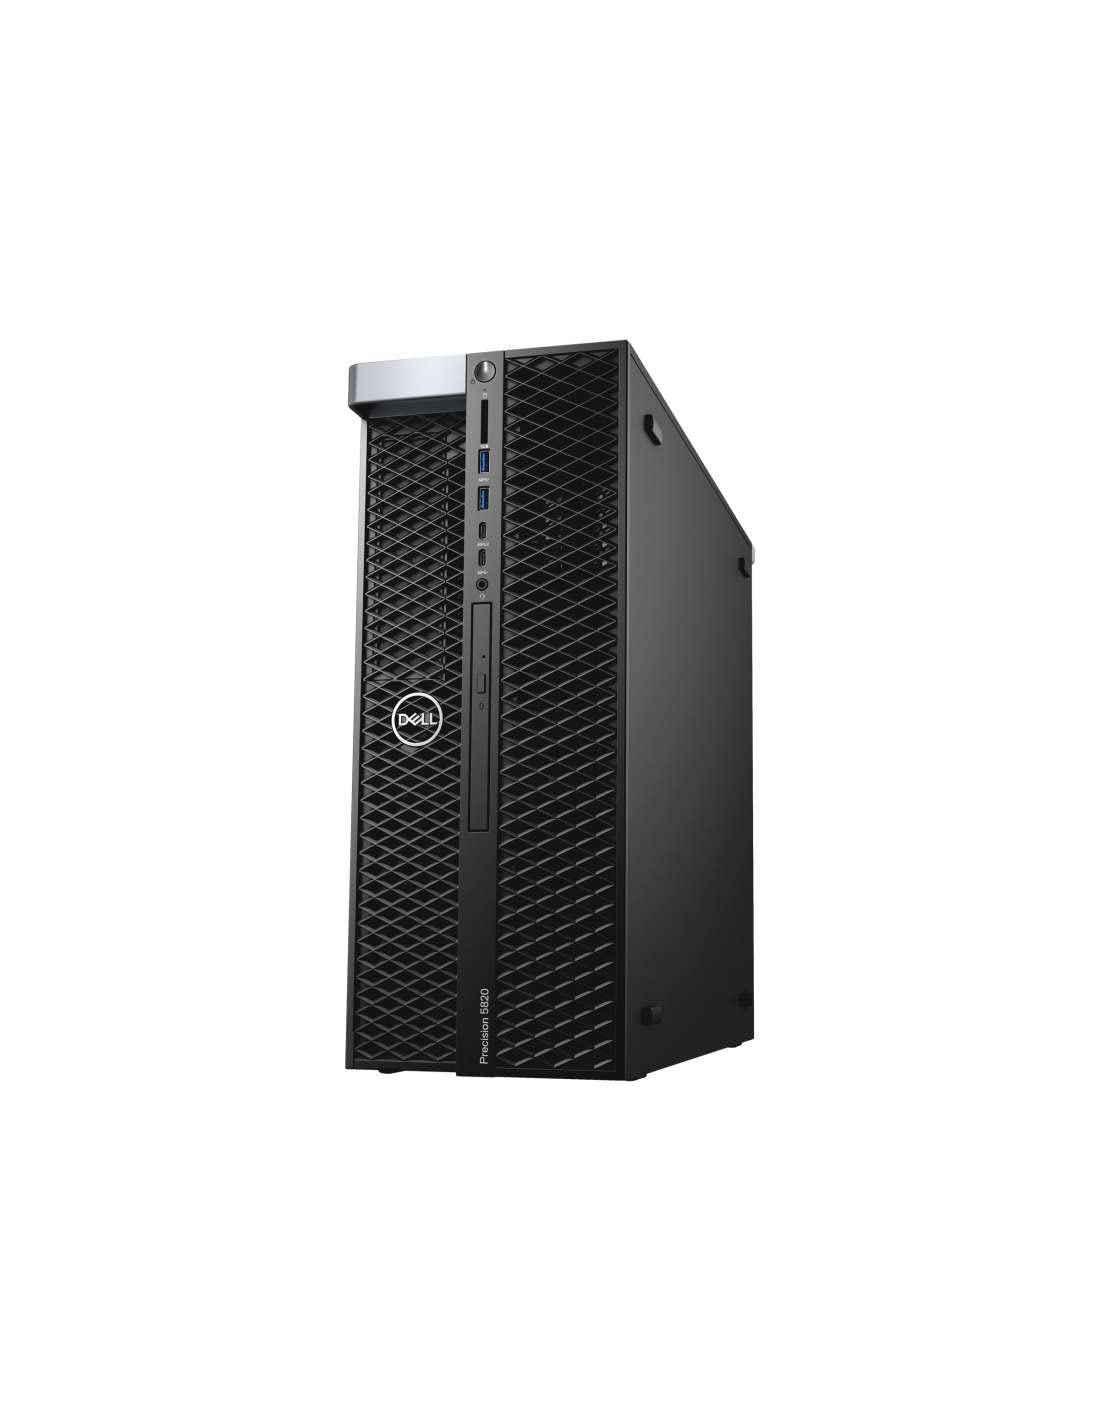 Dell Precision Tower 5810-685W - Intel Xeon E5-1620 V3 (4 Core, 3.6GHz